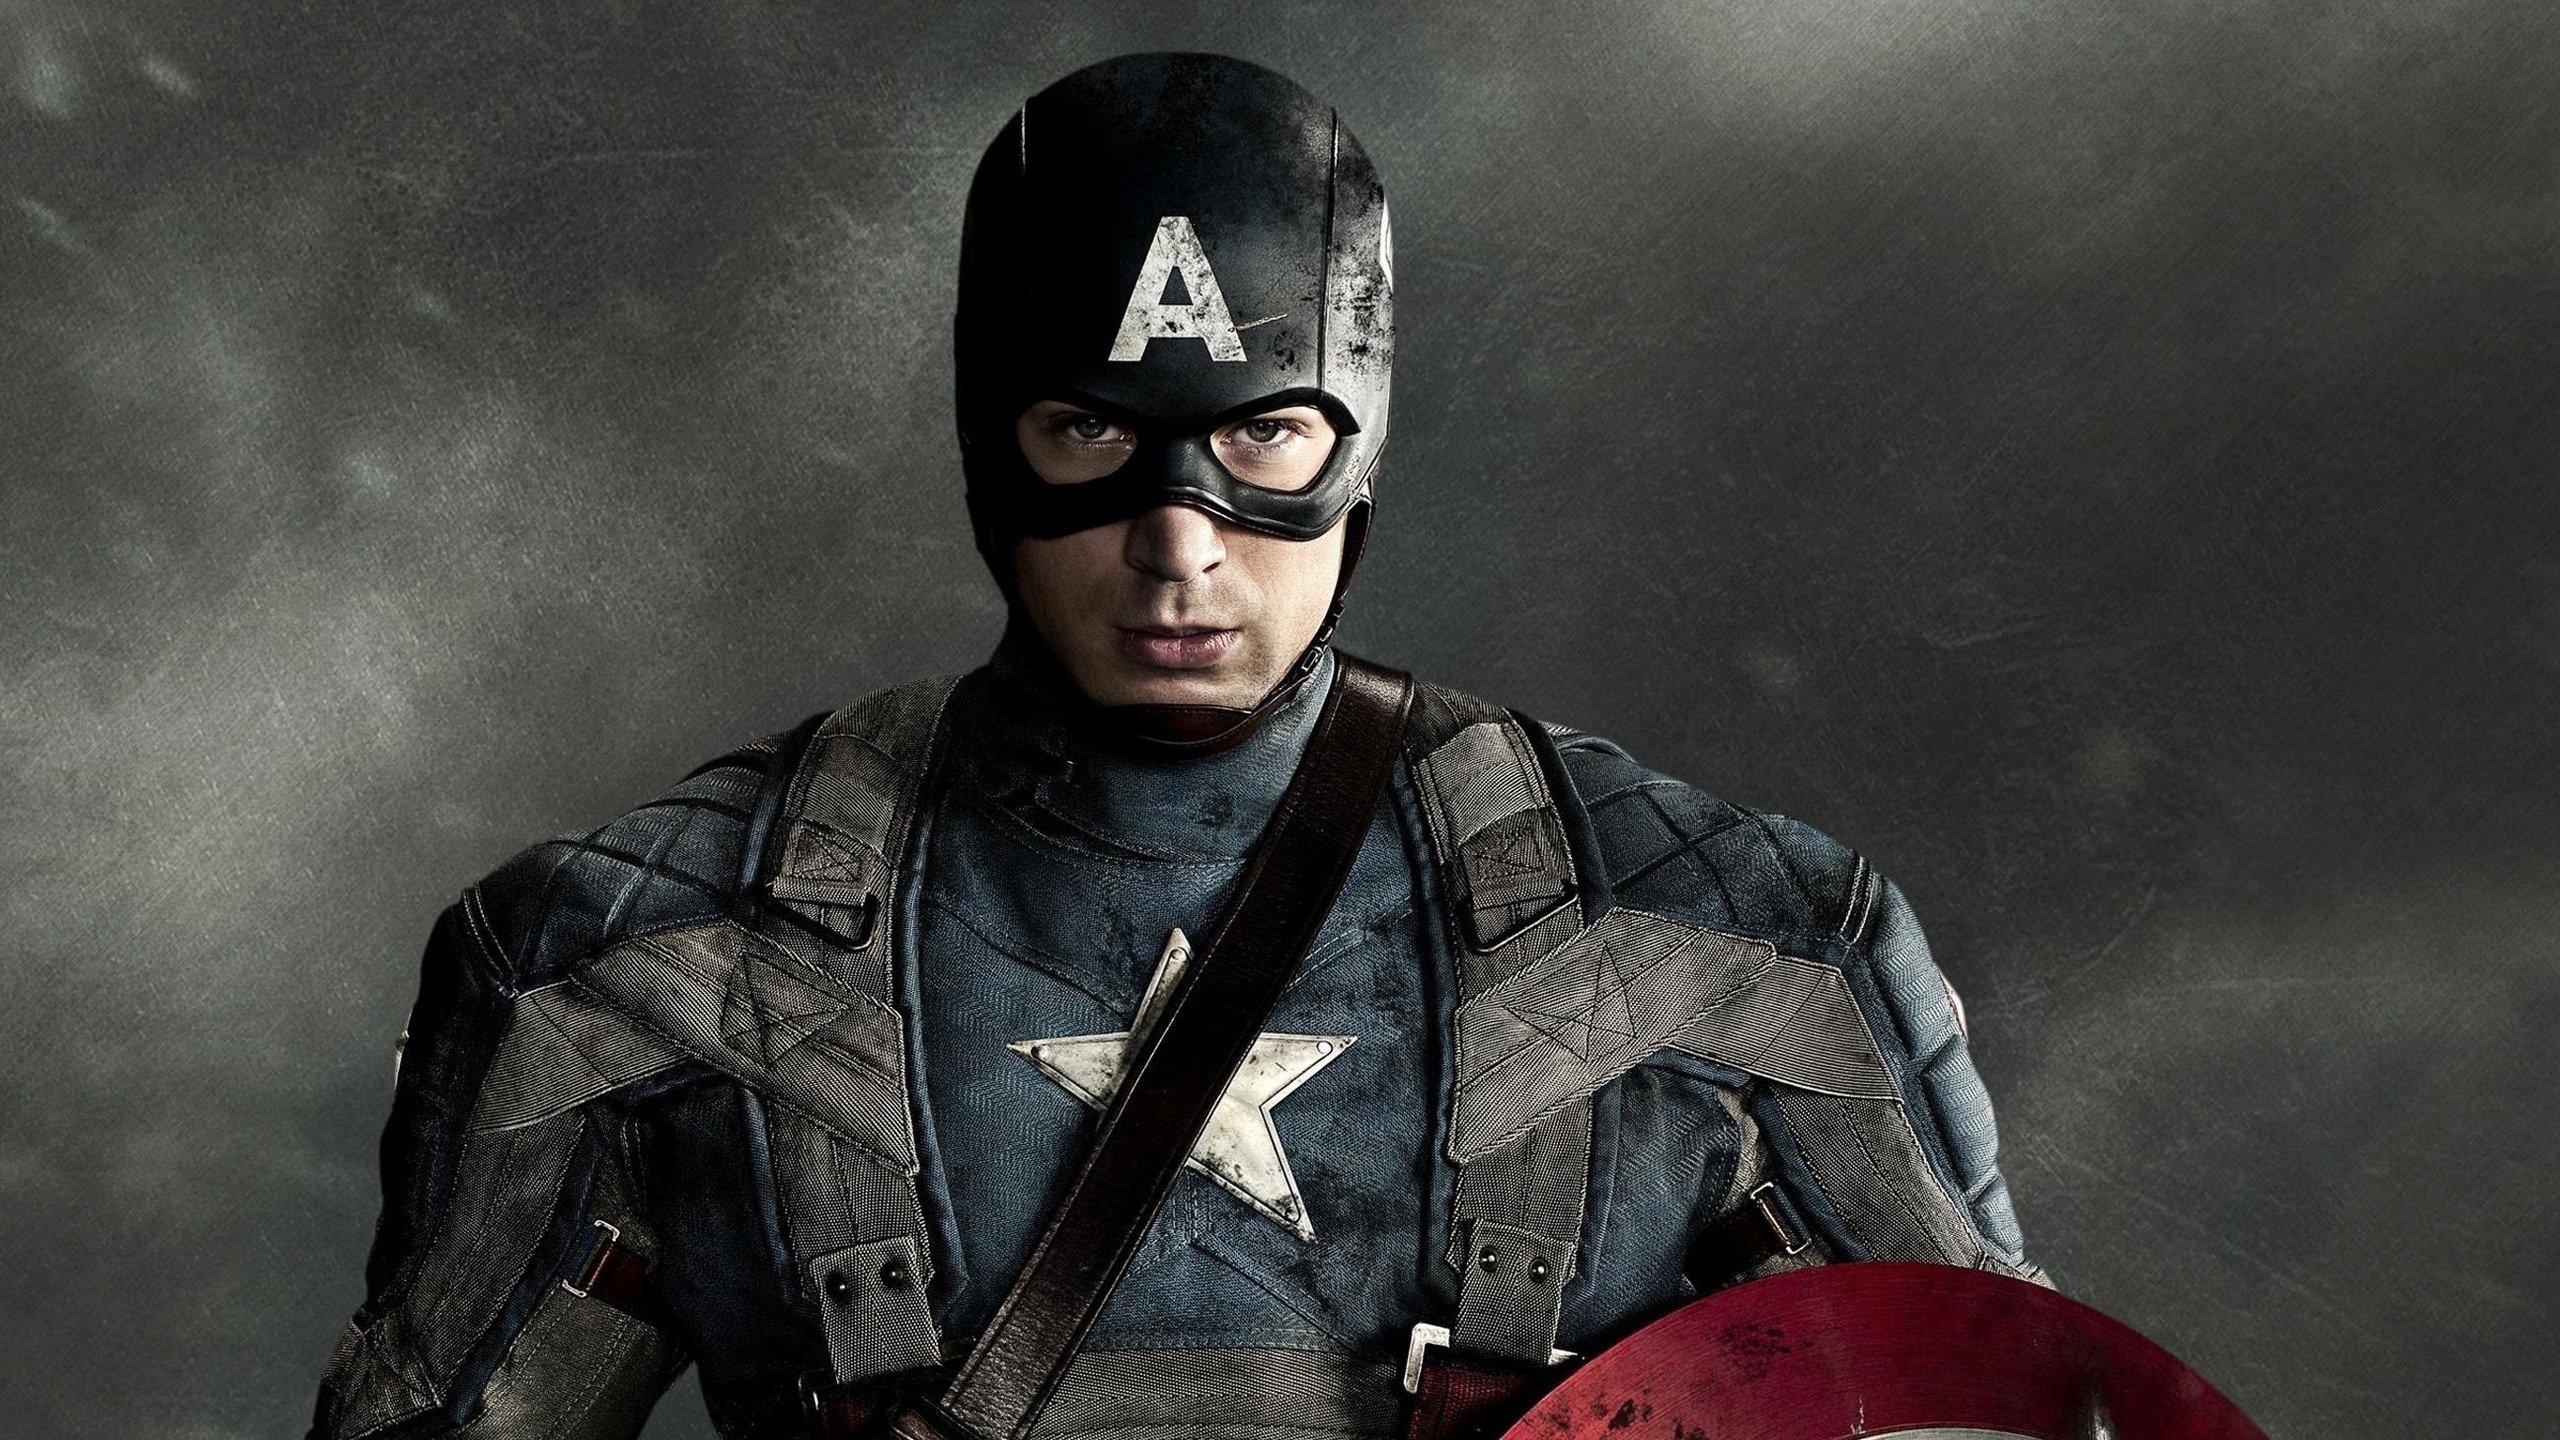 Captain America for 2560x1440 HDTV resolution